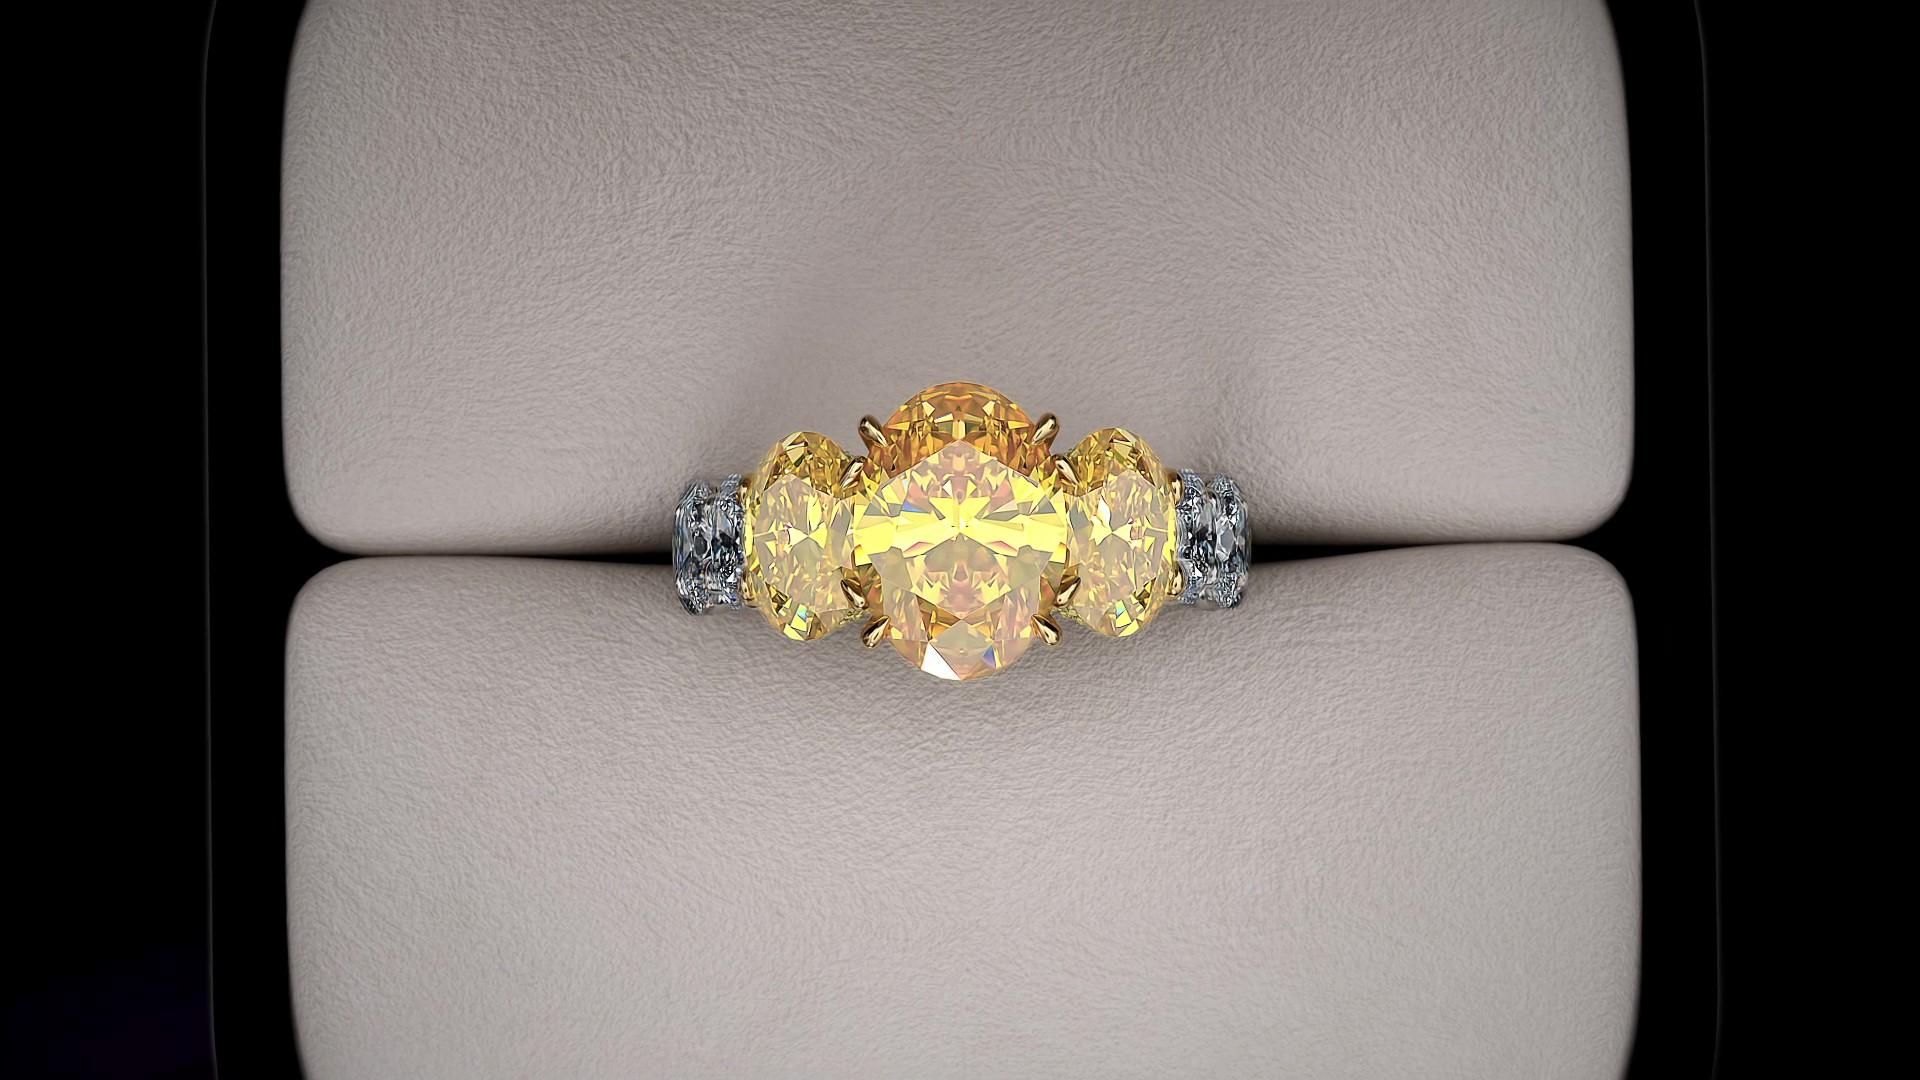 Certifié GIA, 5,11 carats de diamants ovales de couleur jaune vif intense, pureté entre VVS et VS, couleur jaune riche, pas de fluorescence, cinq diamants gradués, en or jaune 18 carats et platine, et environ 3,6 carats de diamants ovales blancs,